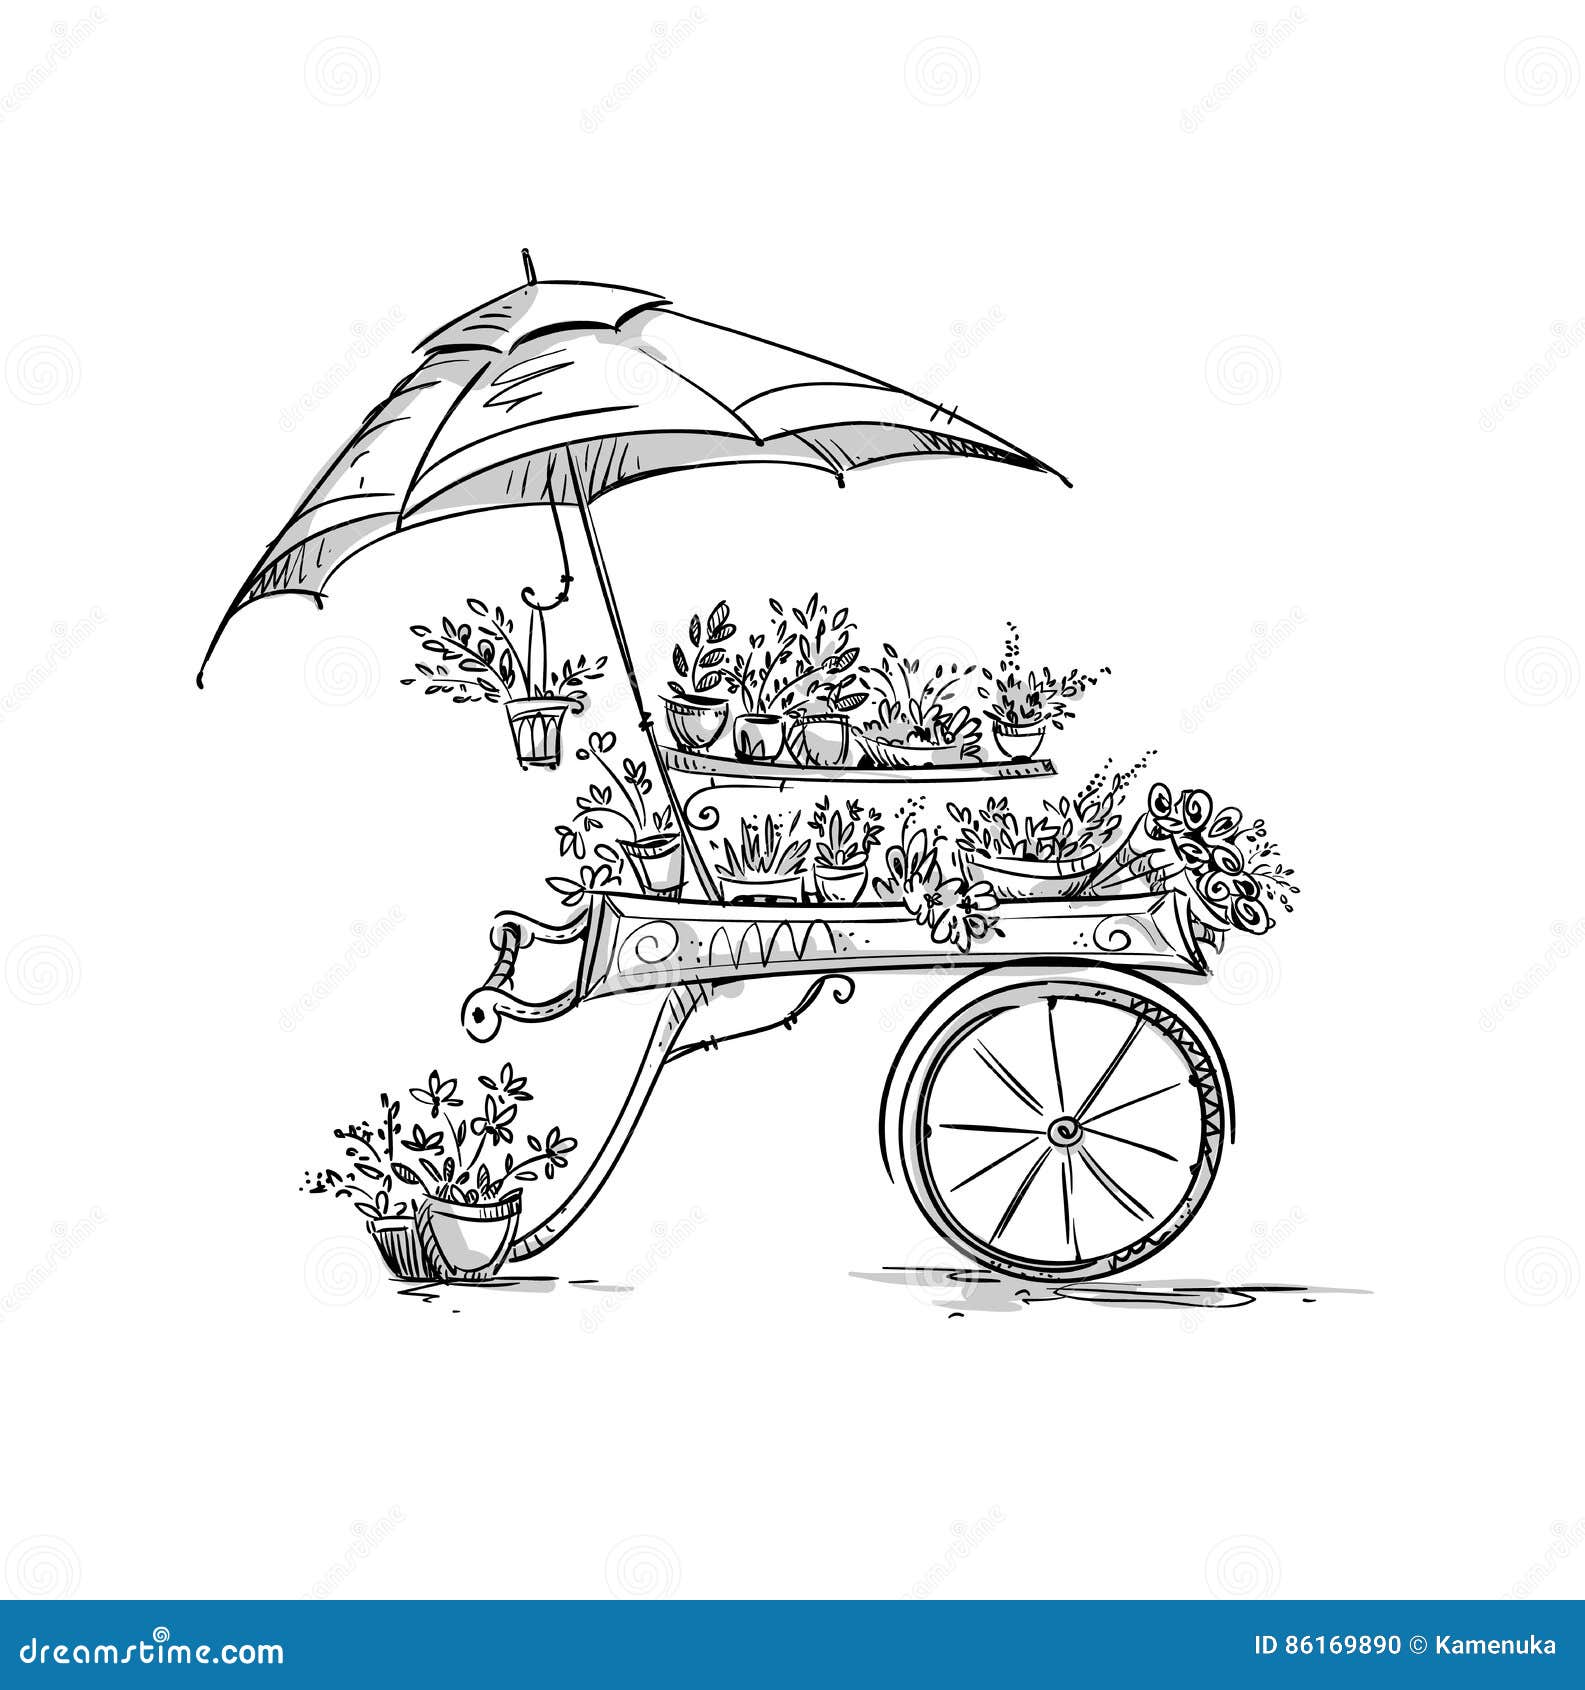 flower stall, florist cart